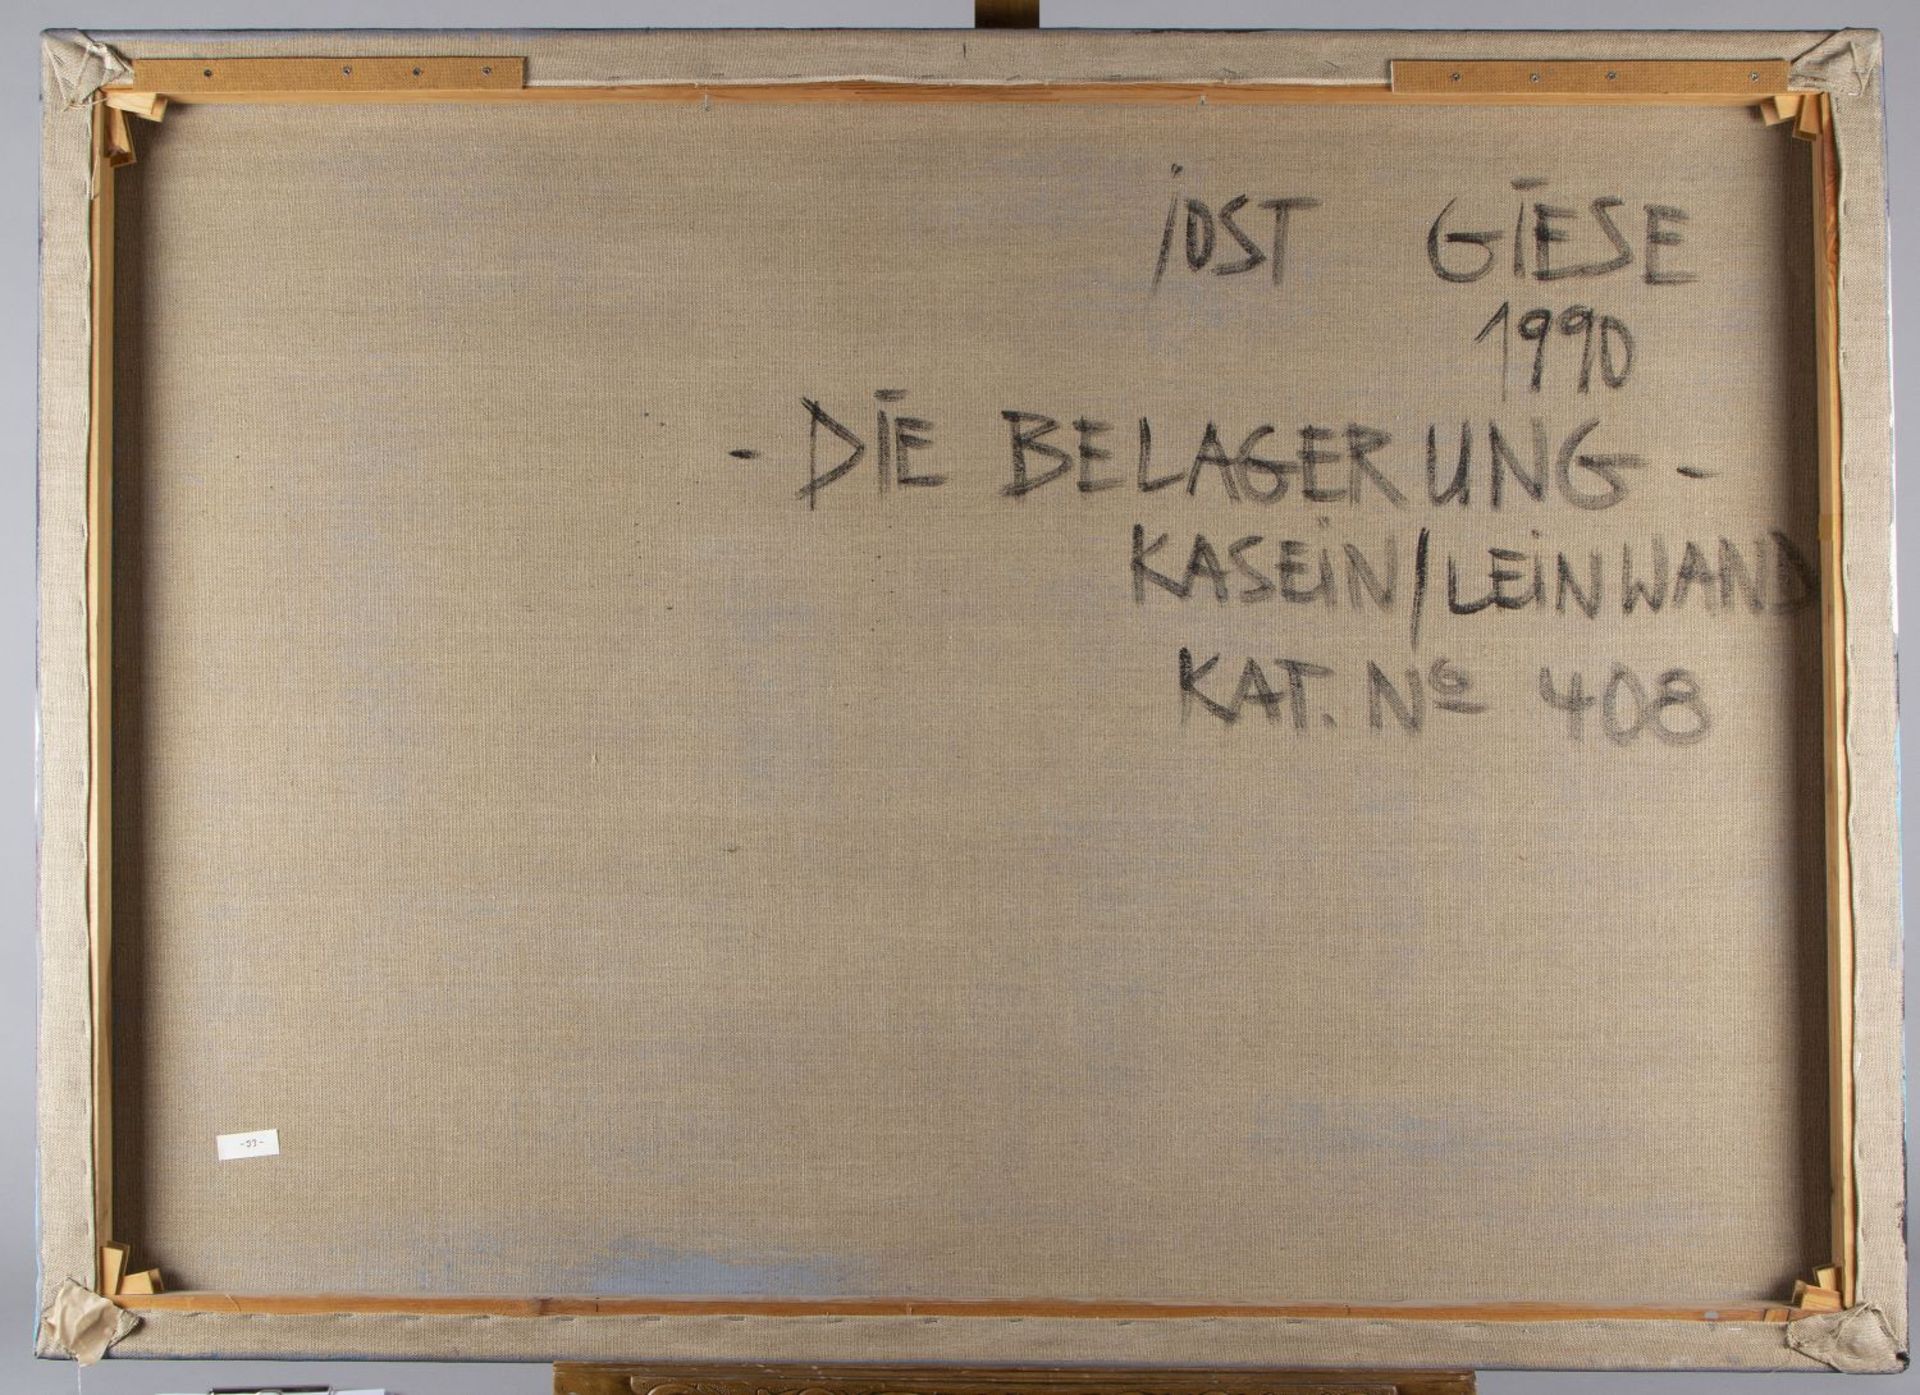 Giese, Jost. 1953 Meißen Die Belagerung. Kasein/Lwd. Sign. und dat. (19)90. 100,5 x 140,5 cm. Verso  - Bild 3 aus 3